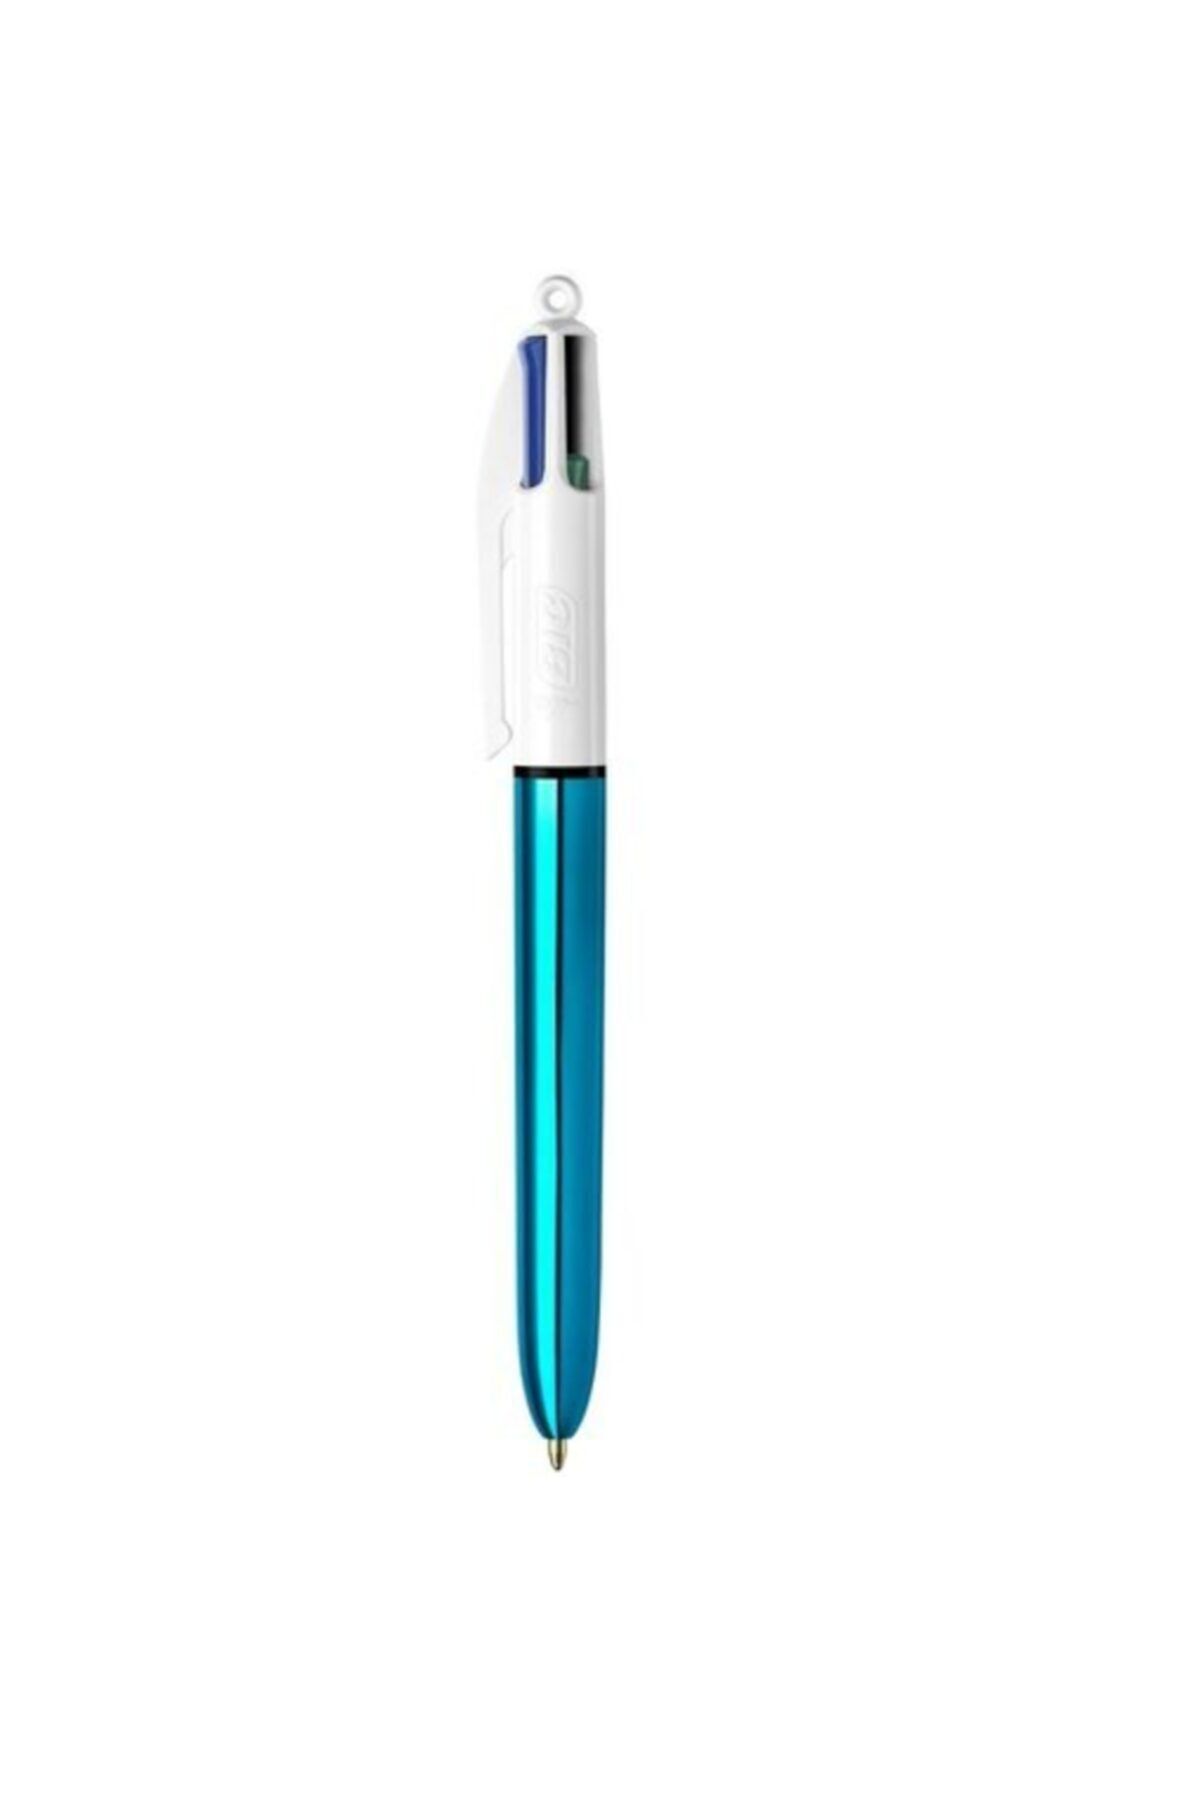 Bic Tükenmez Kalem 4 Renk Birarada Shine Mavi Gövde